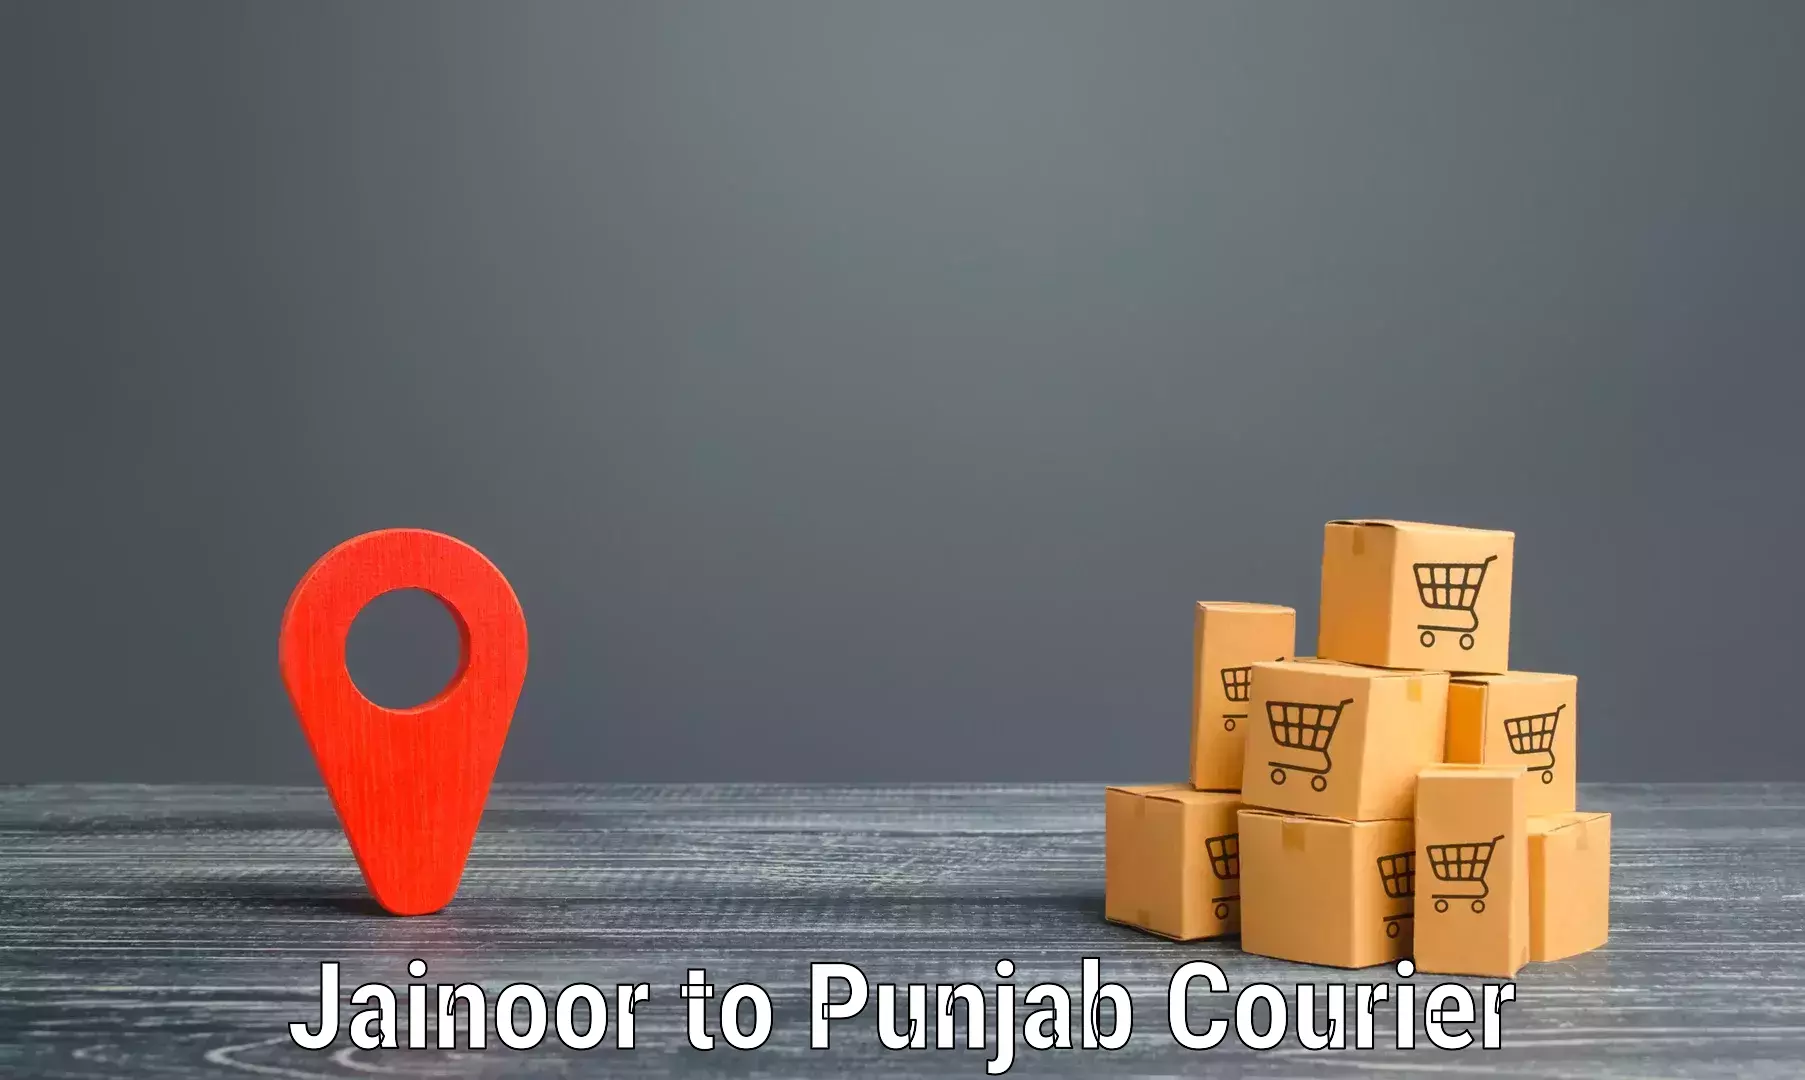 Cost-effective freight solutions Jainoor to Faridkot